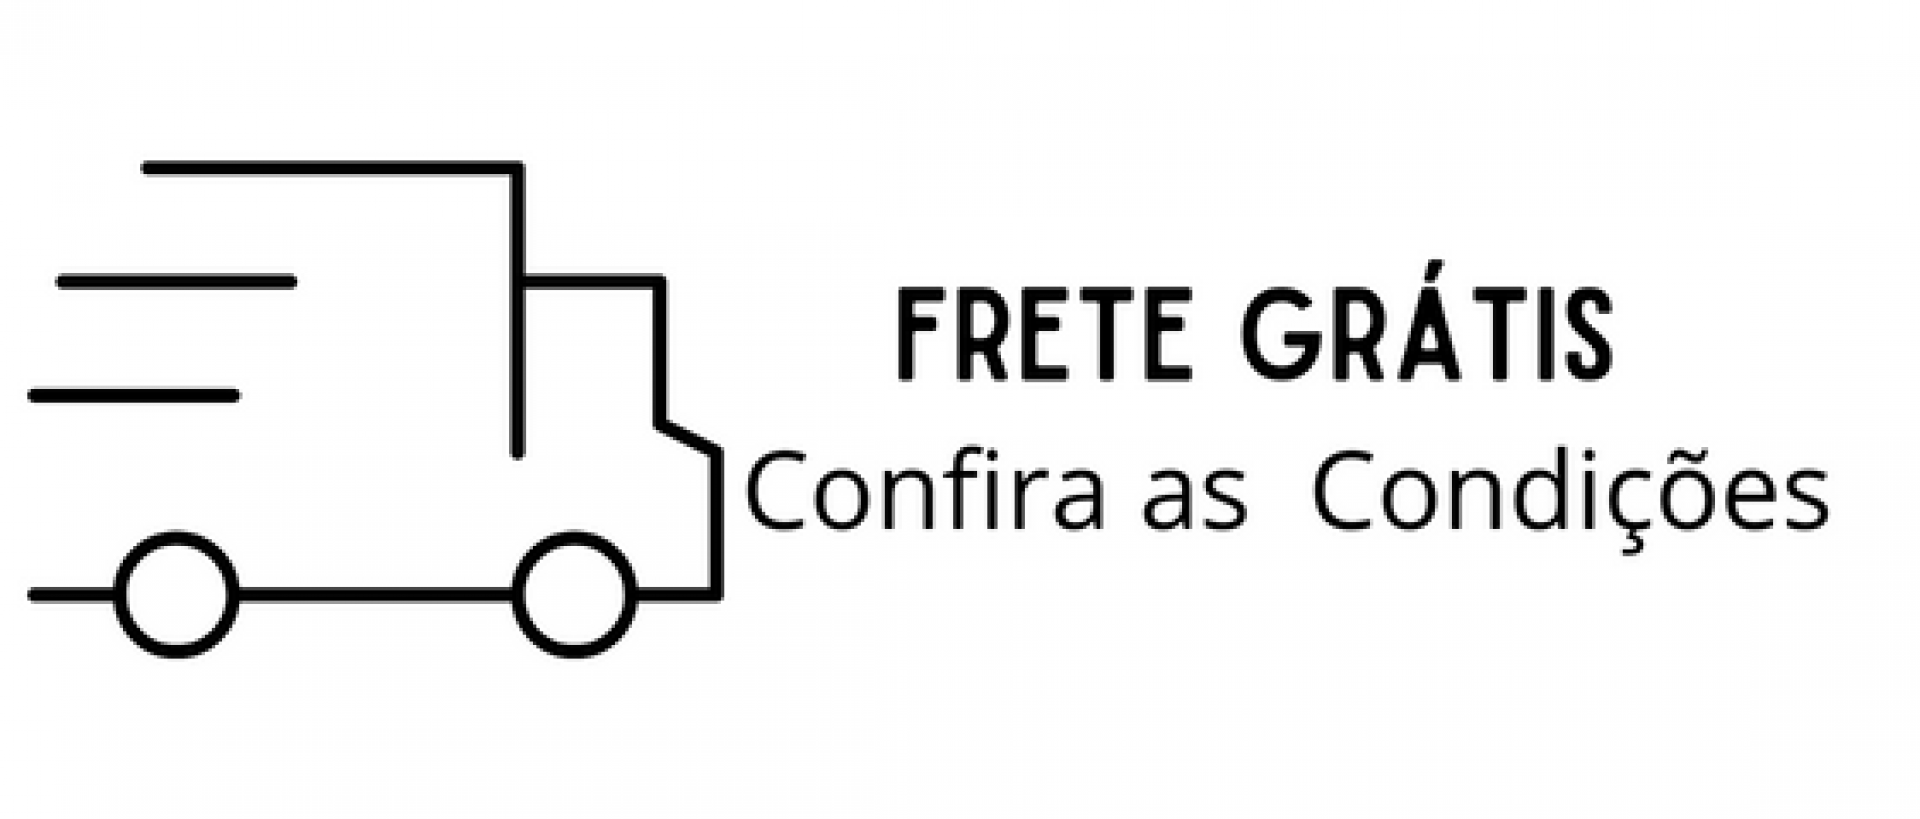 FRETE GRÁTIS